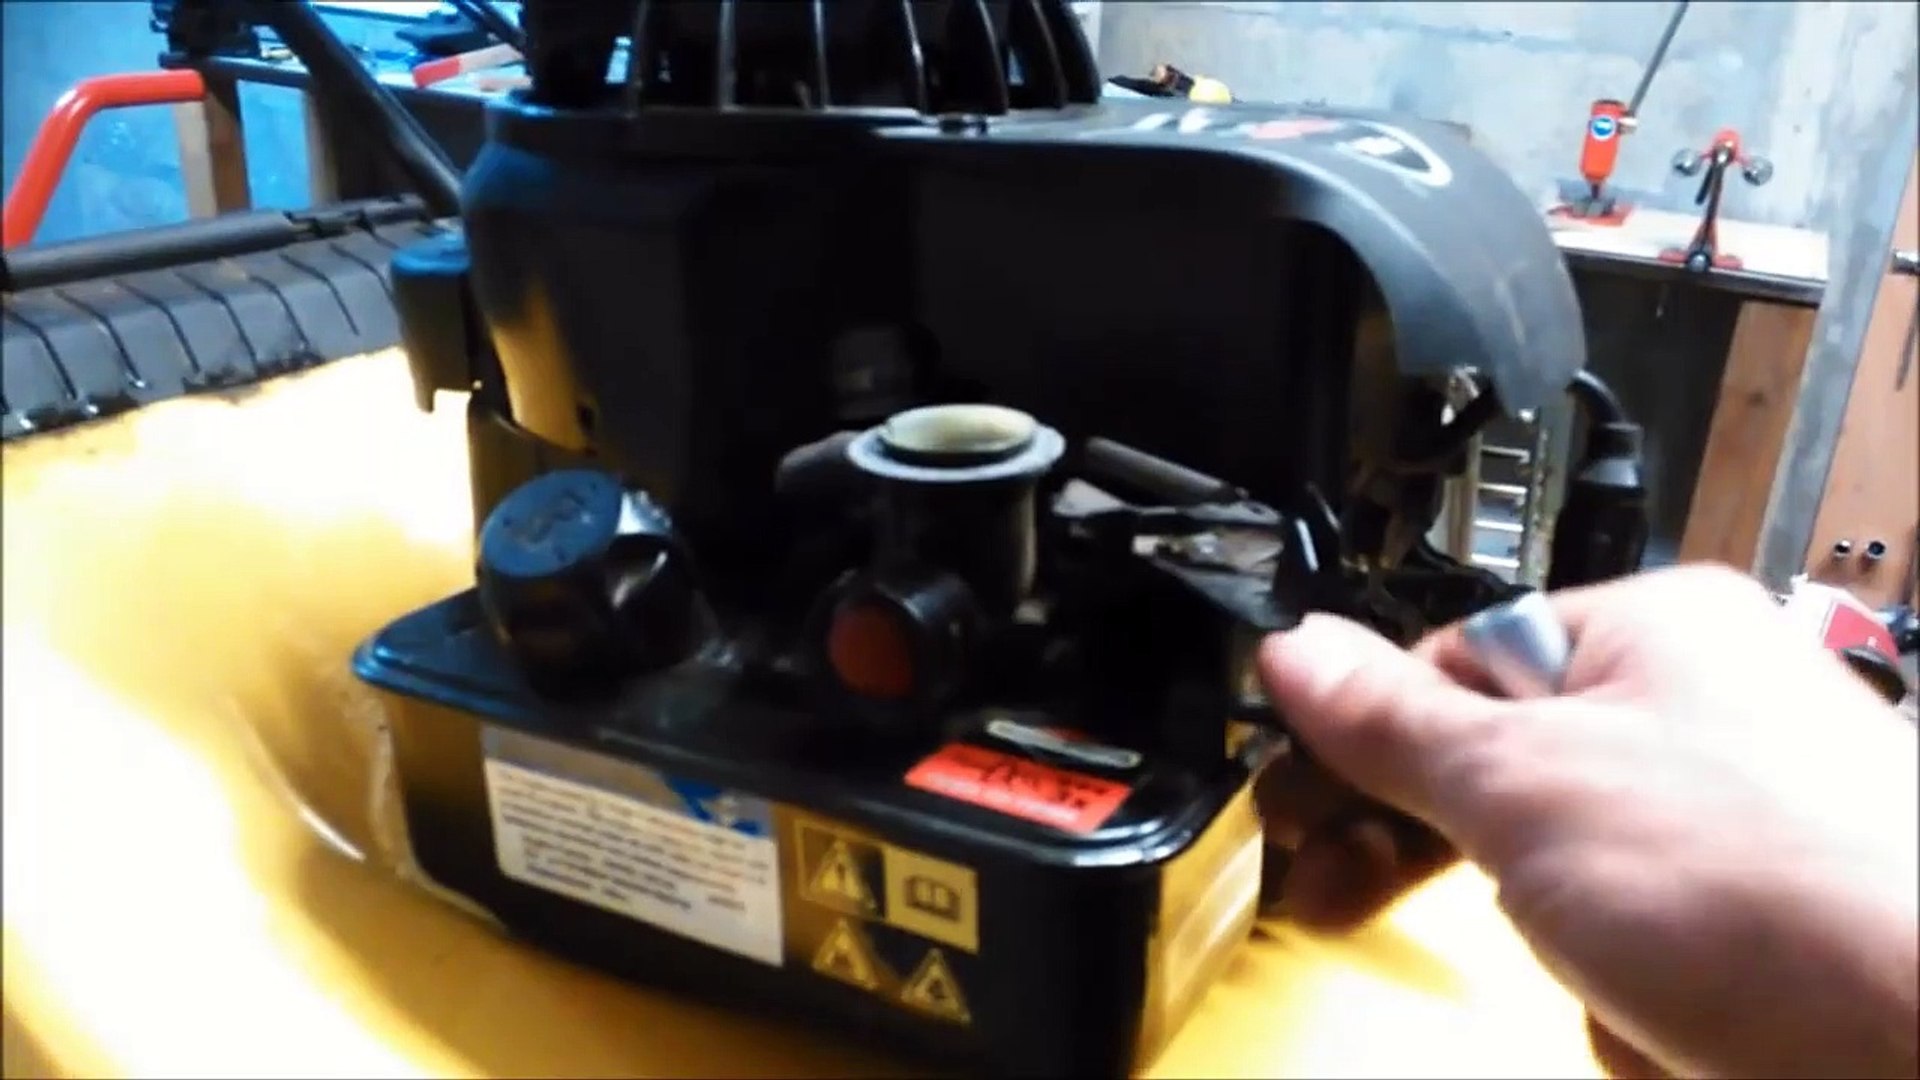 Démontage, nettoyage et réparation carburateur Briggs & Stratton 148cc -  Vidéo Dailymotion